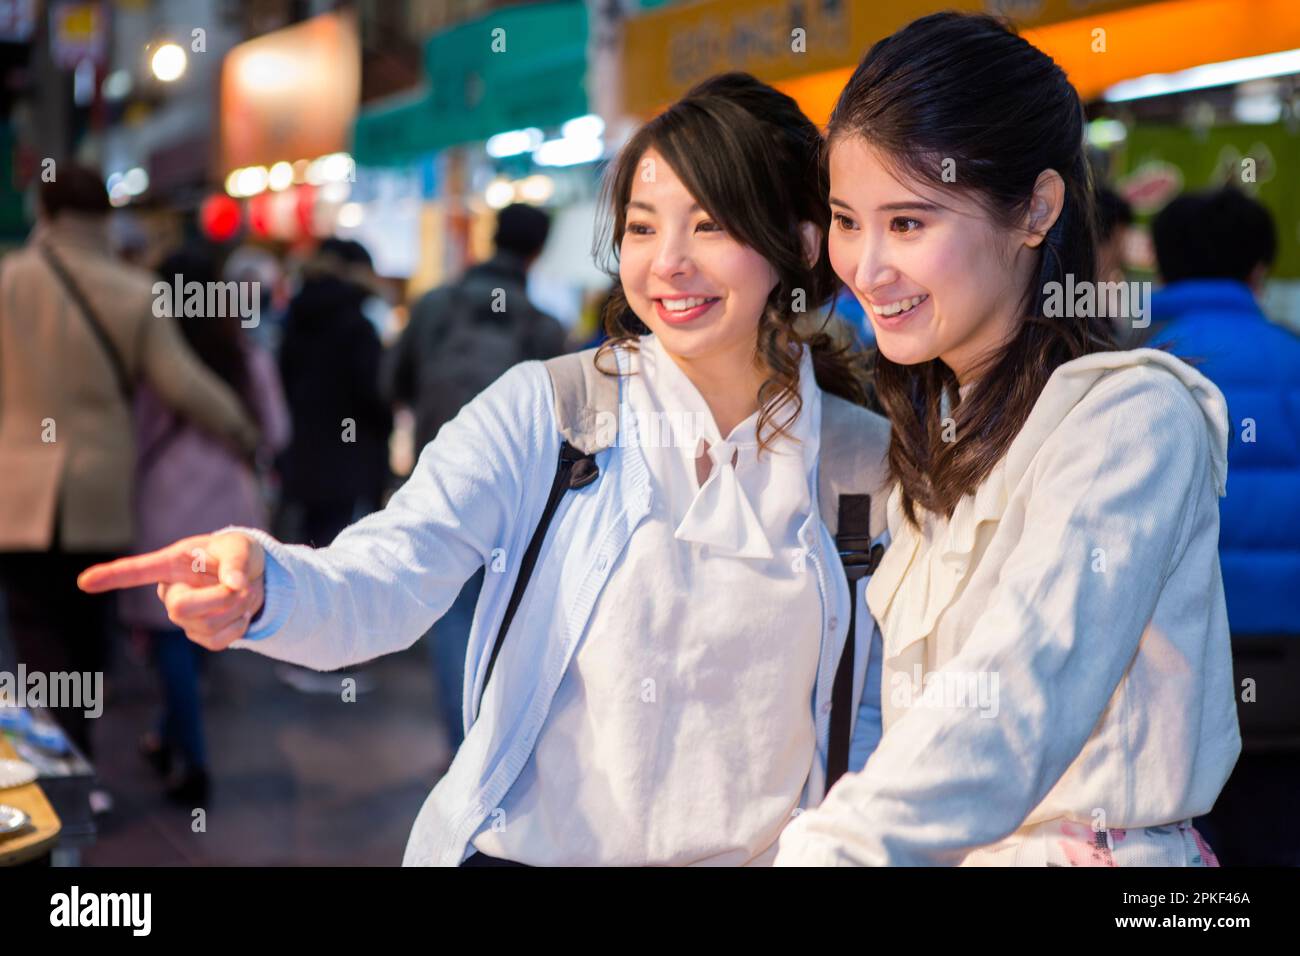 Two women touring Kuromon Market Stock Photo